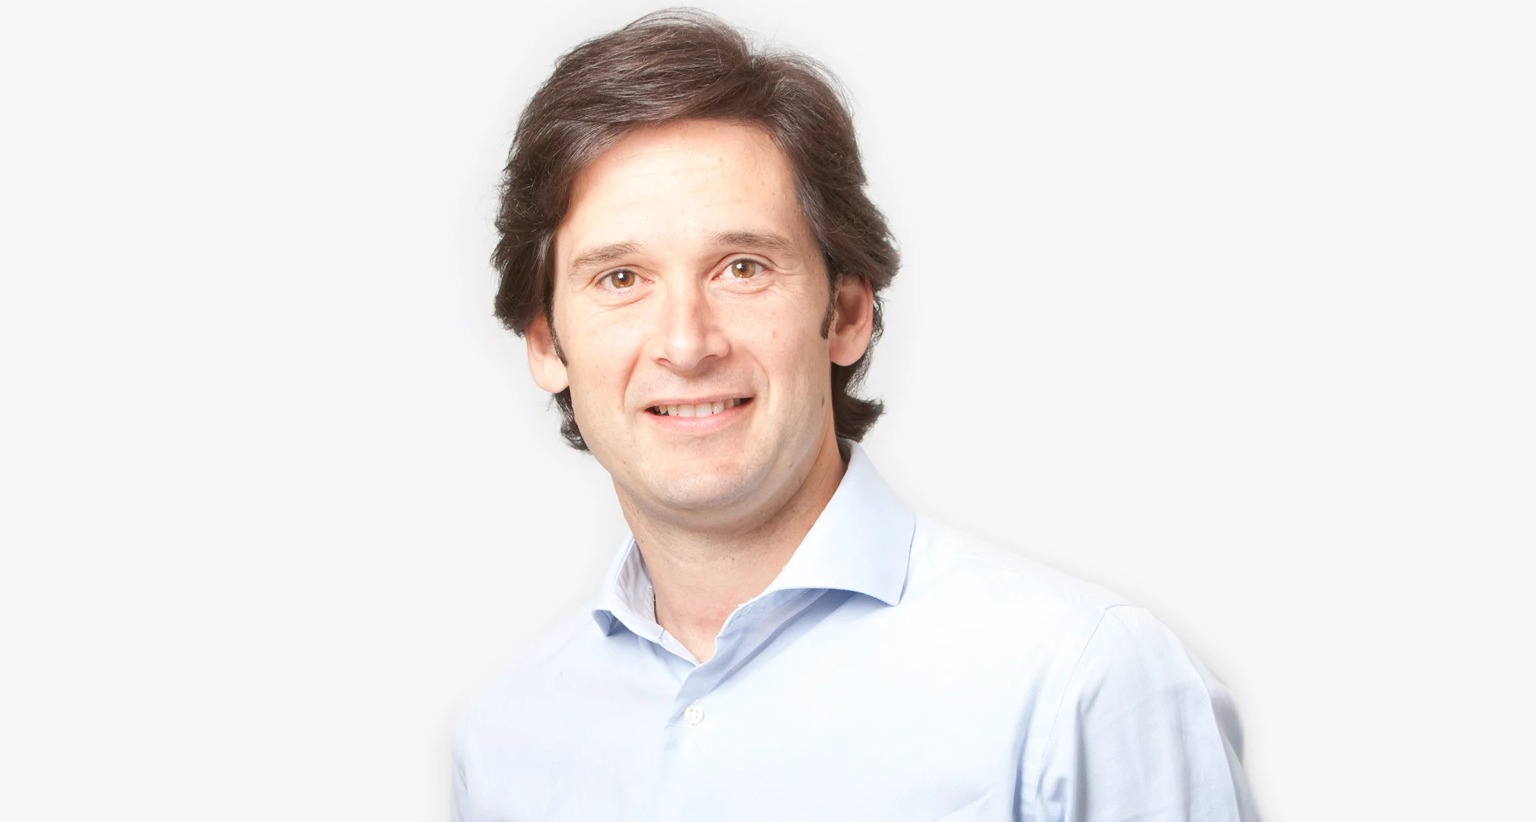 Miguel Vergara es el nuevo responsable de Accenture Song en España, sucediendo a Carmen López